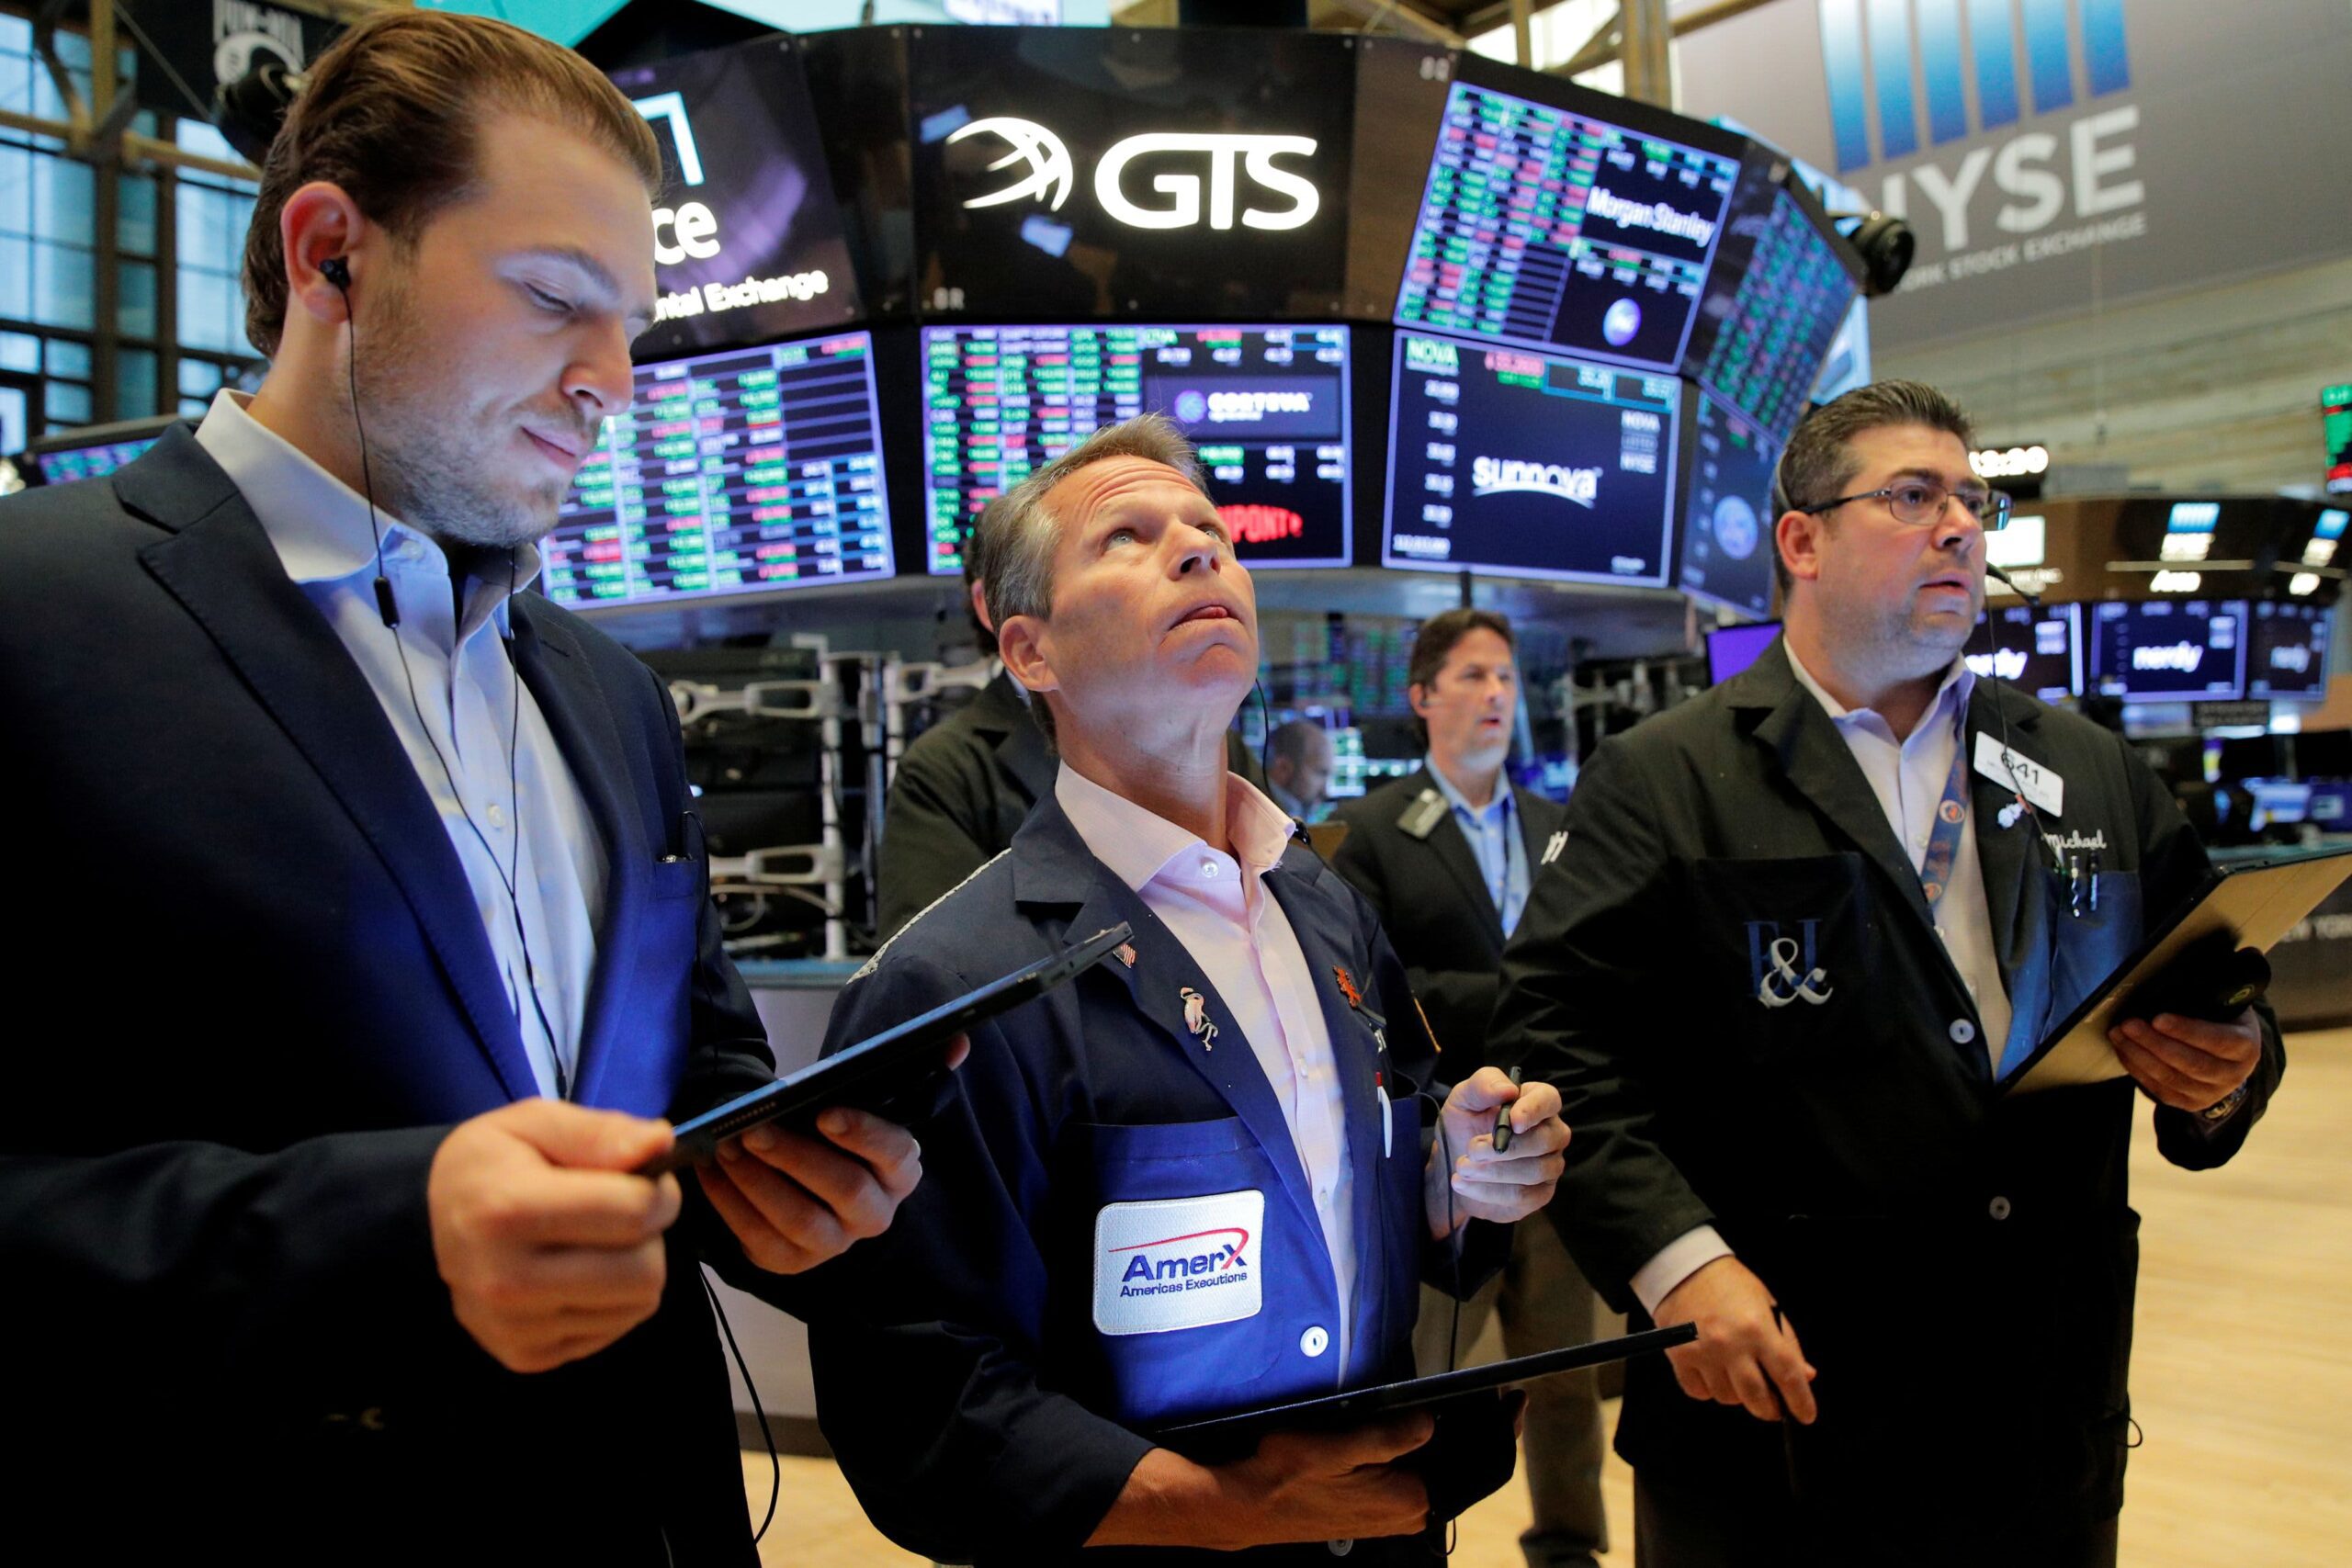 Los futuros de acciones cayeron después de una venta masiva impulsada por la tecnología en Wall Street